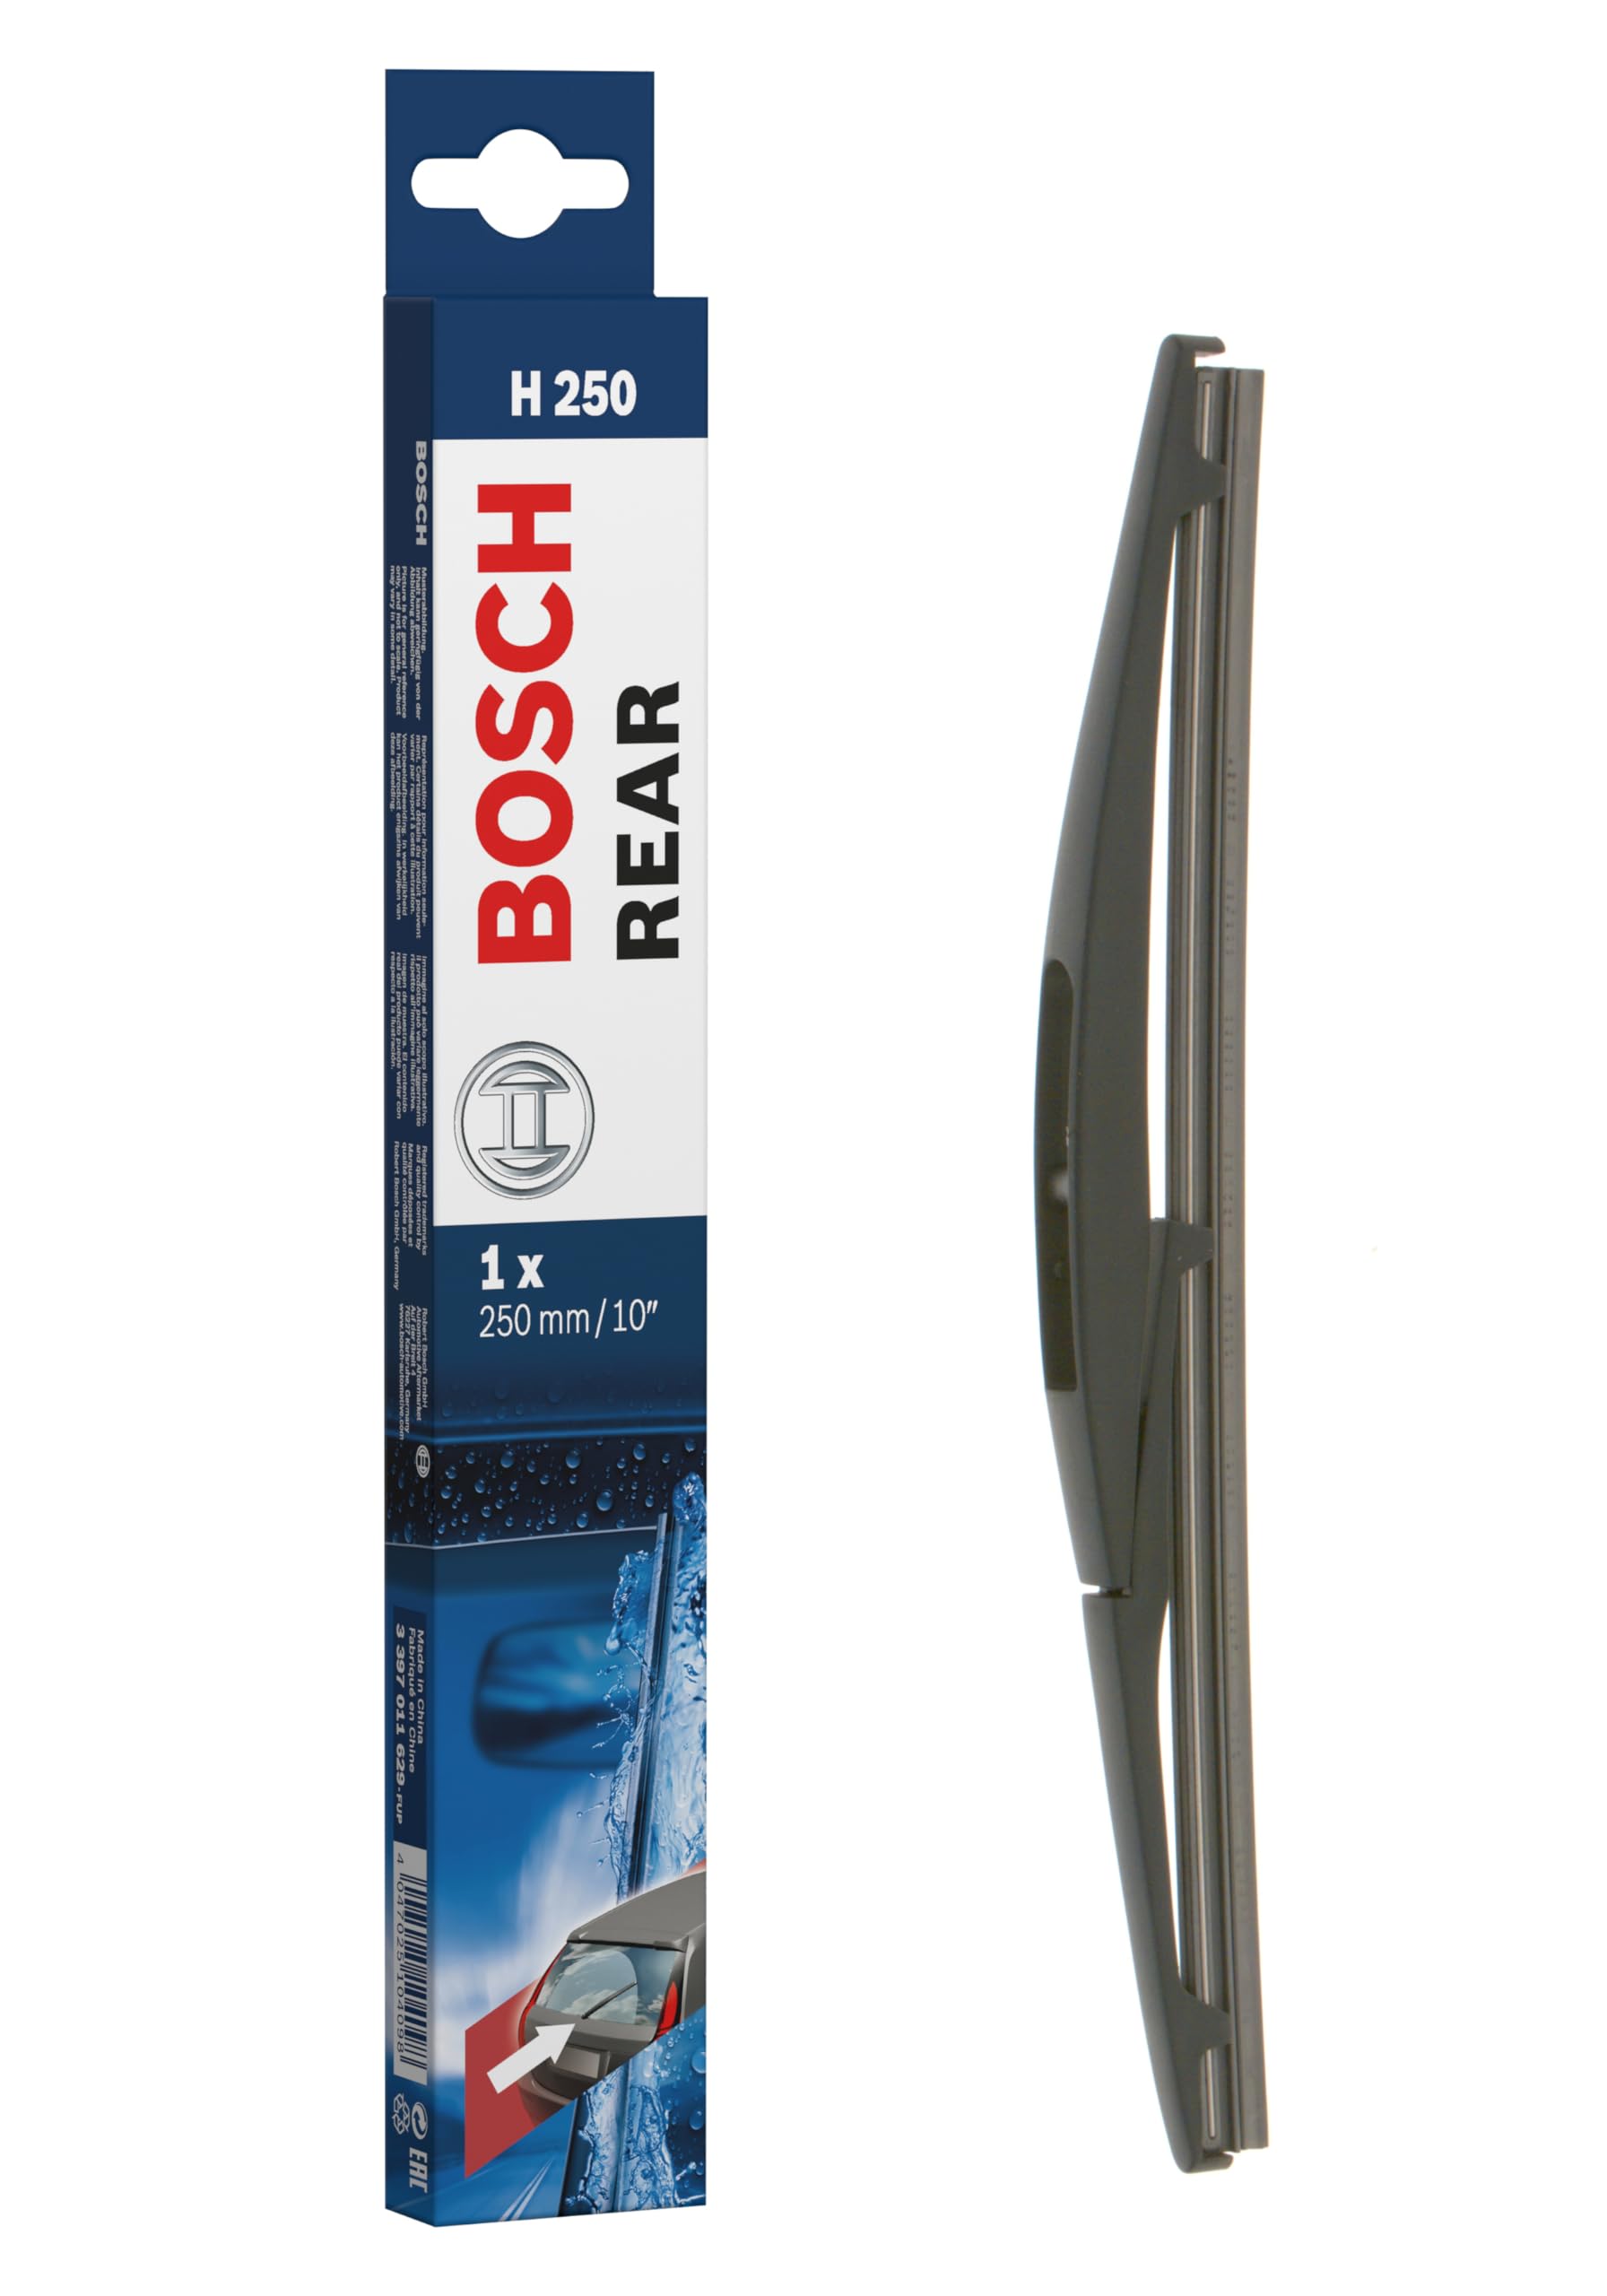 Bosch Scheibenwischer Rear H250, Länge: 250mm – Scheibenwischer für Heckscheibe von Bosch Automotive